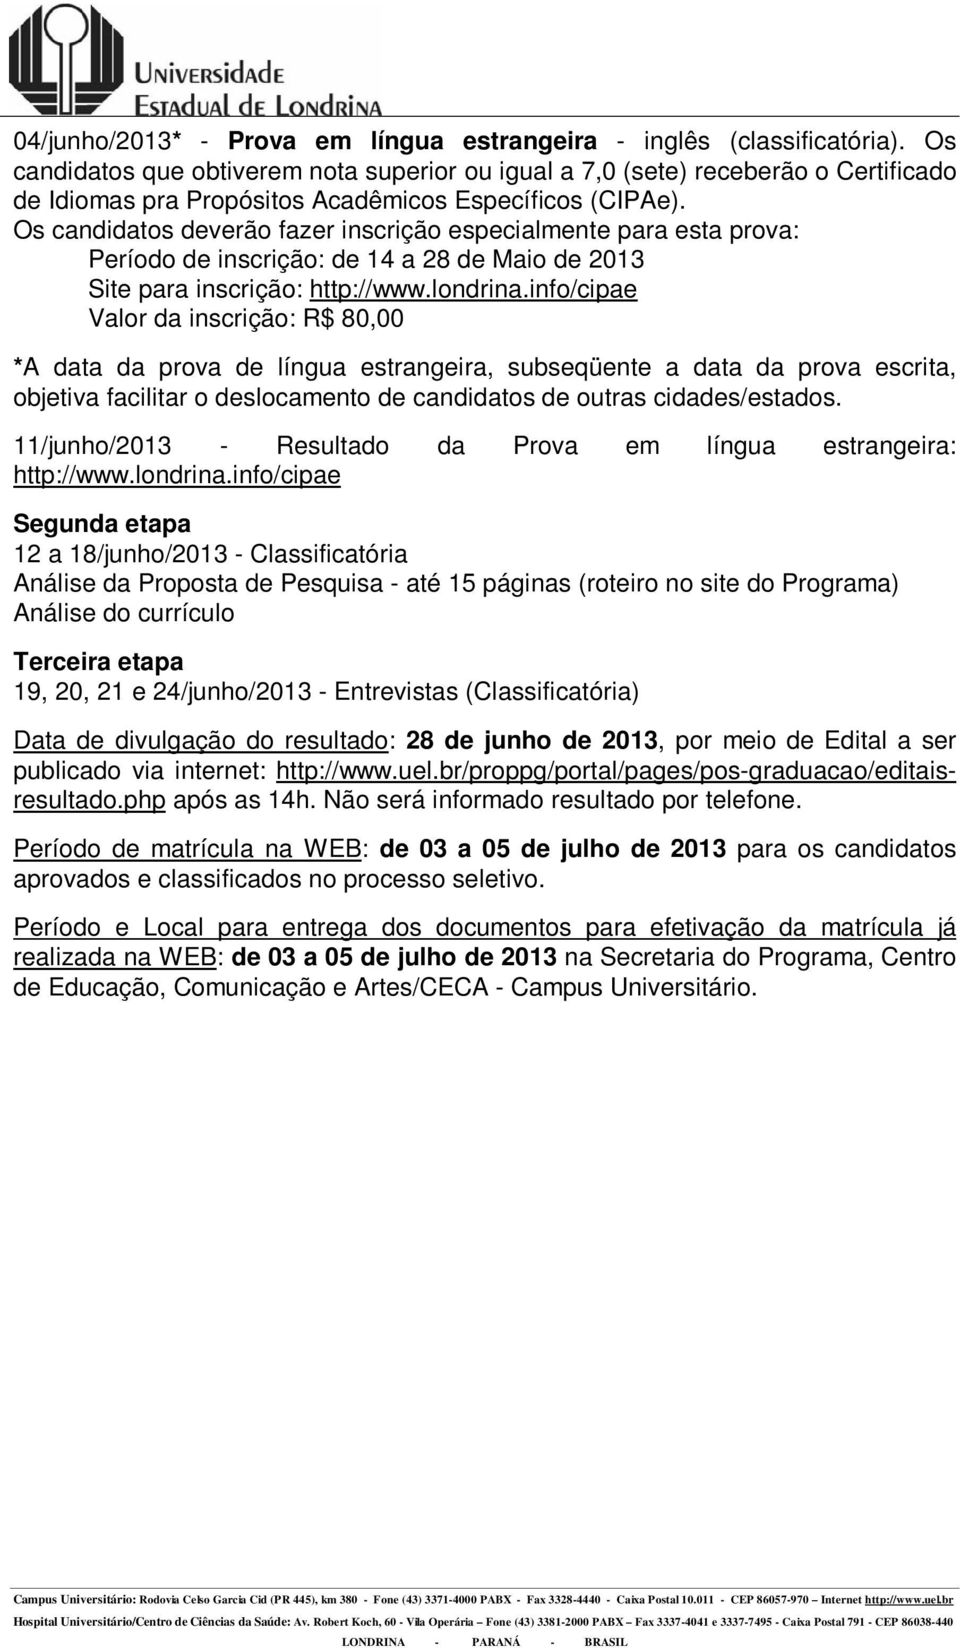 Os candidatos deverão fazer inscrição especialmente para esta prova: Período de inscrição: de 14 a 28 de Maio de 2013 Site para inscrição: http://www.londrina.